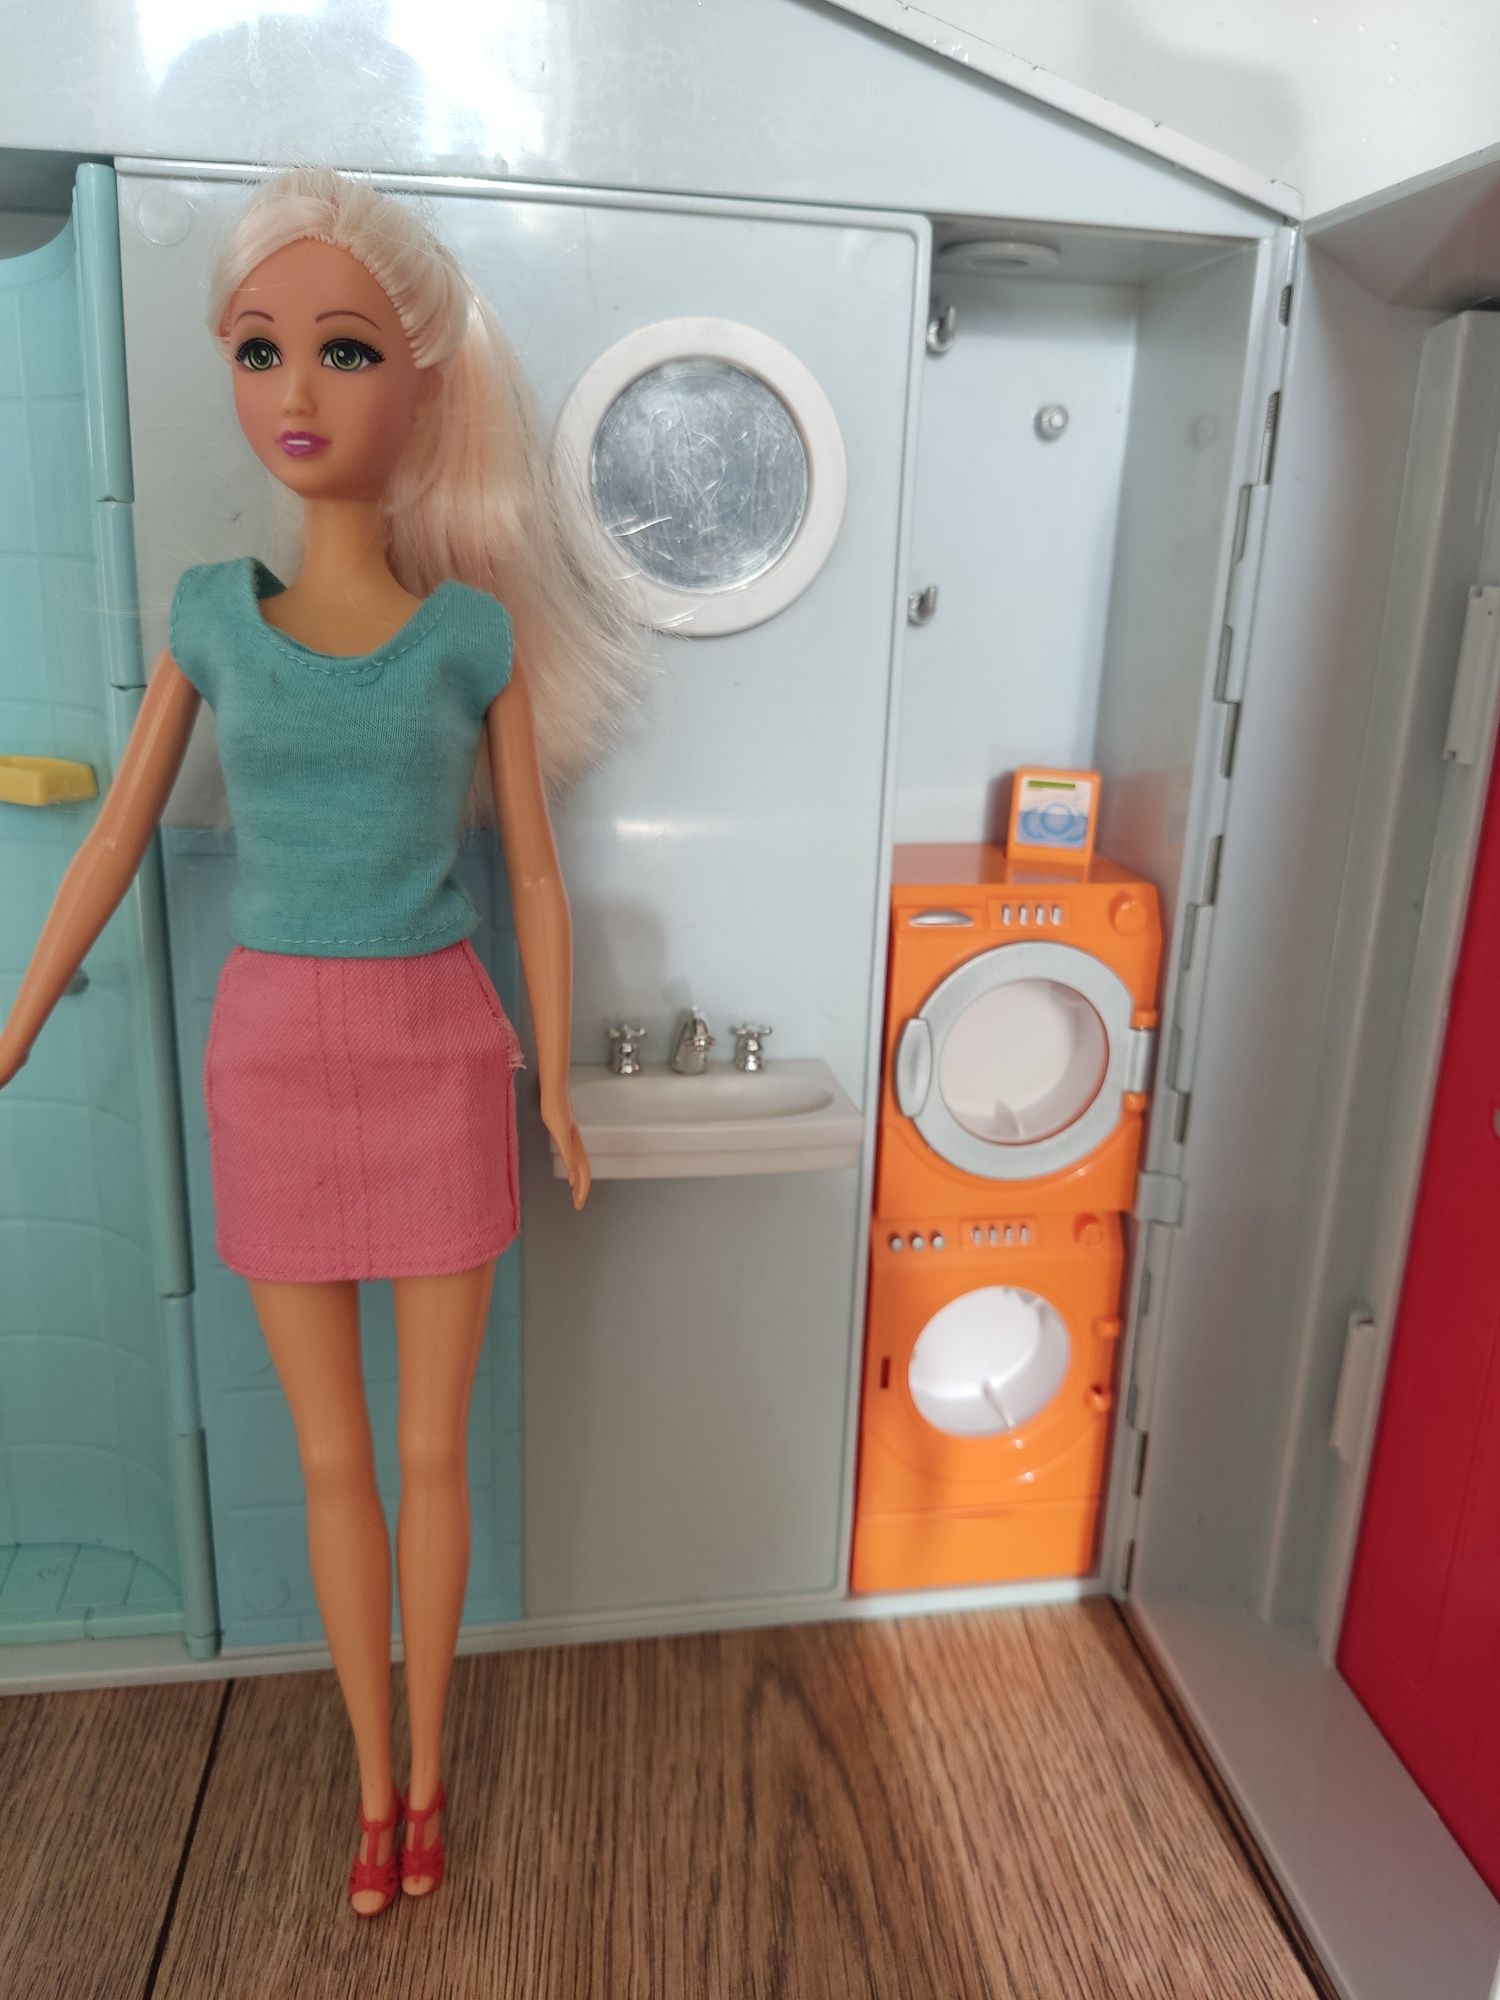 Domek Barbie Mattel z dźwiękiem